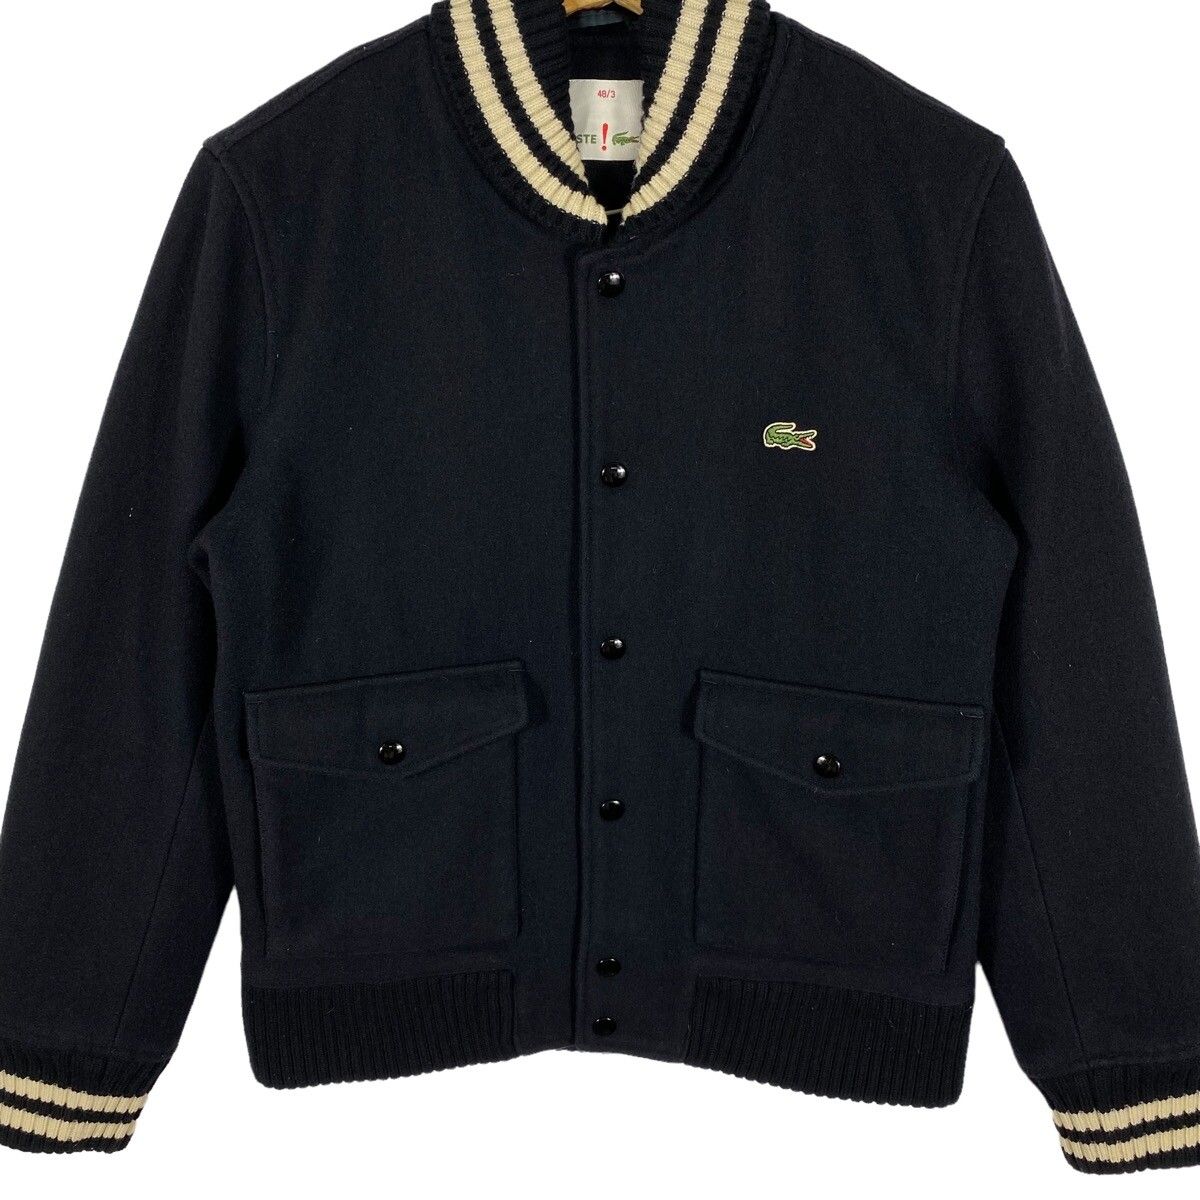 Vintage Lacoste Varsity Bomber Wool Jacket Size 48/3 (M) - 4